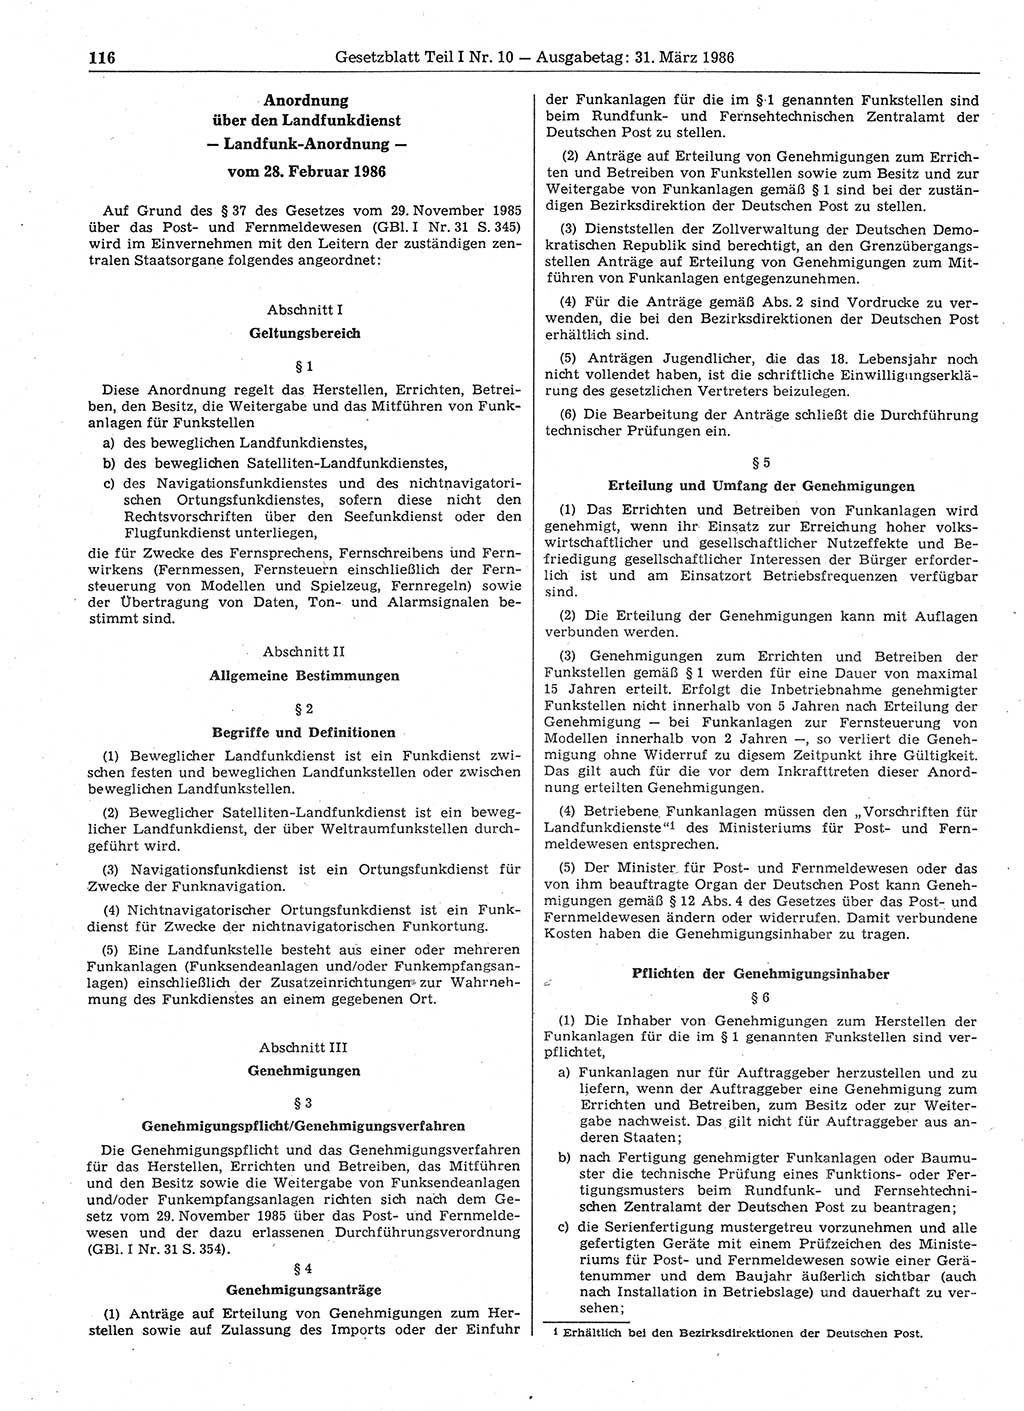 Gesetzblatt (GBl.) der Deutschen Demokratischen Republik (DDR) Teil Ⅰ 1986, Seite 116 (GBl. DDR Ⅰ 1986, S. 116)